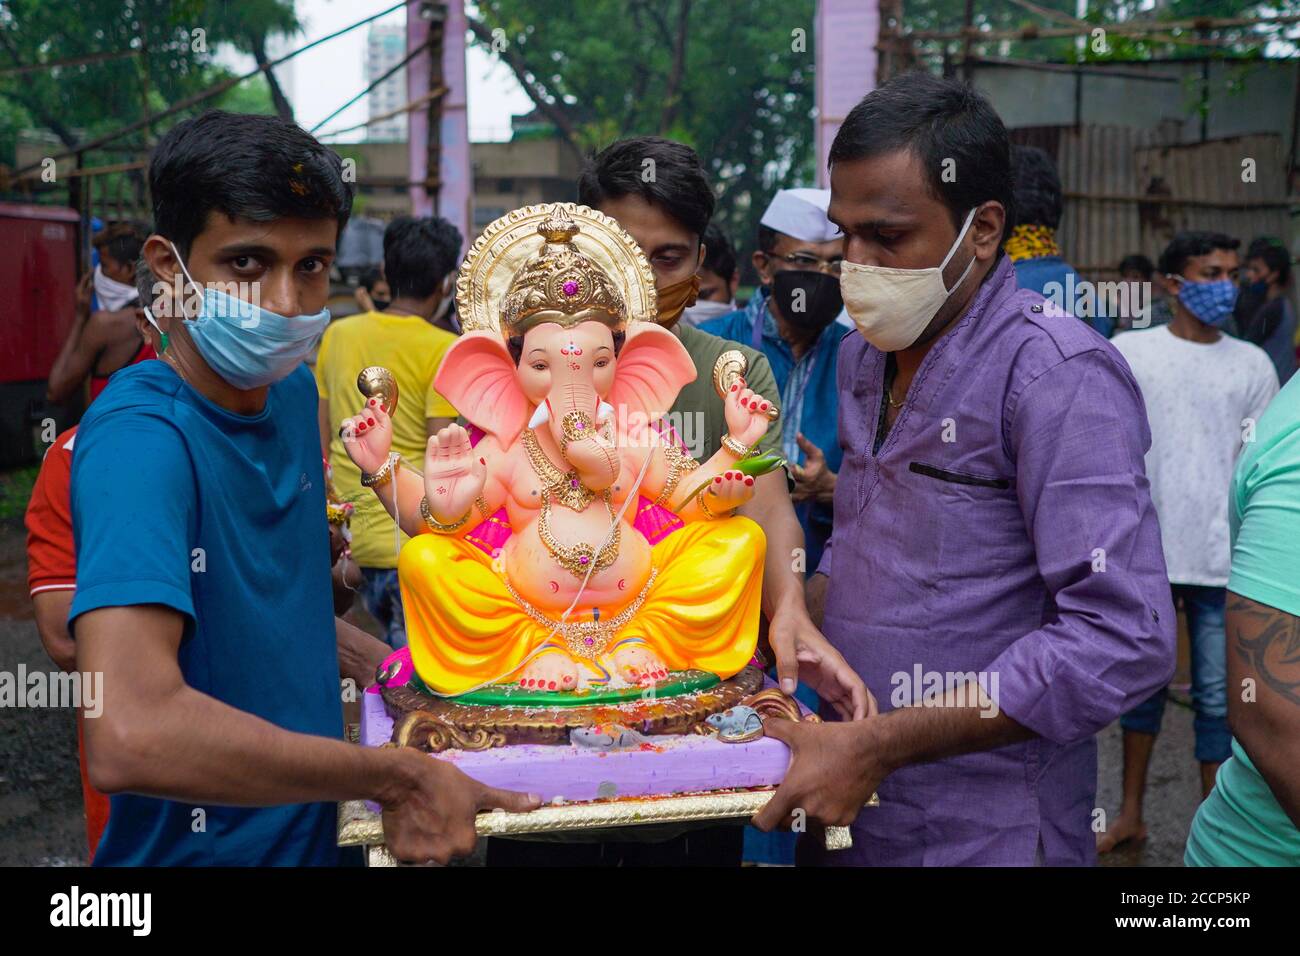 Ganesh Idol Immersion in covid 19 Pandemiebeschränkungen. Ganpati Visarjan in Mann gemacht Teich Menschen mit Maske Mumbai, Maharashtra / Indien - 23 08 2020 Stockfoto